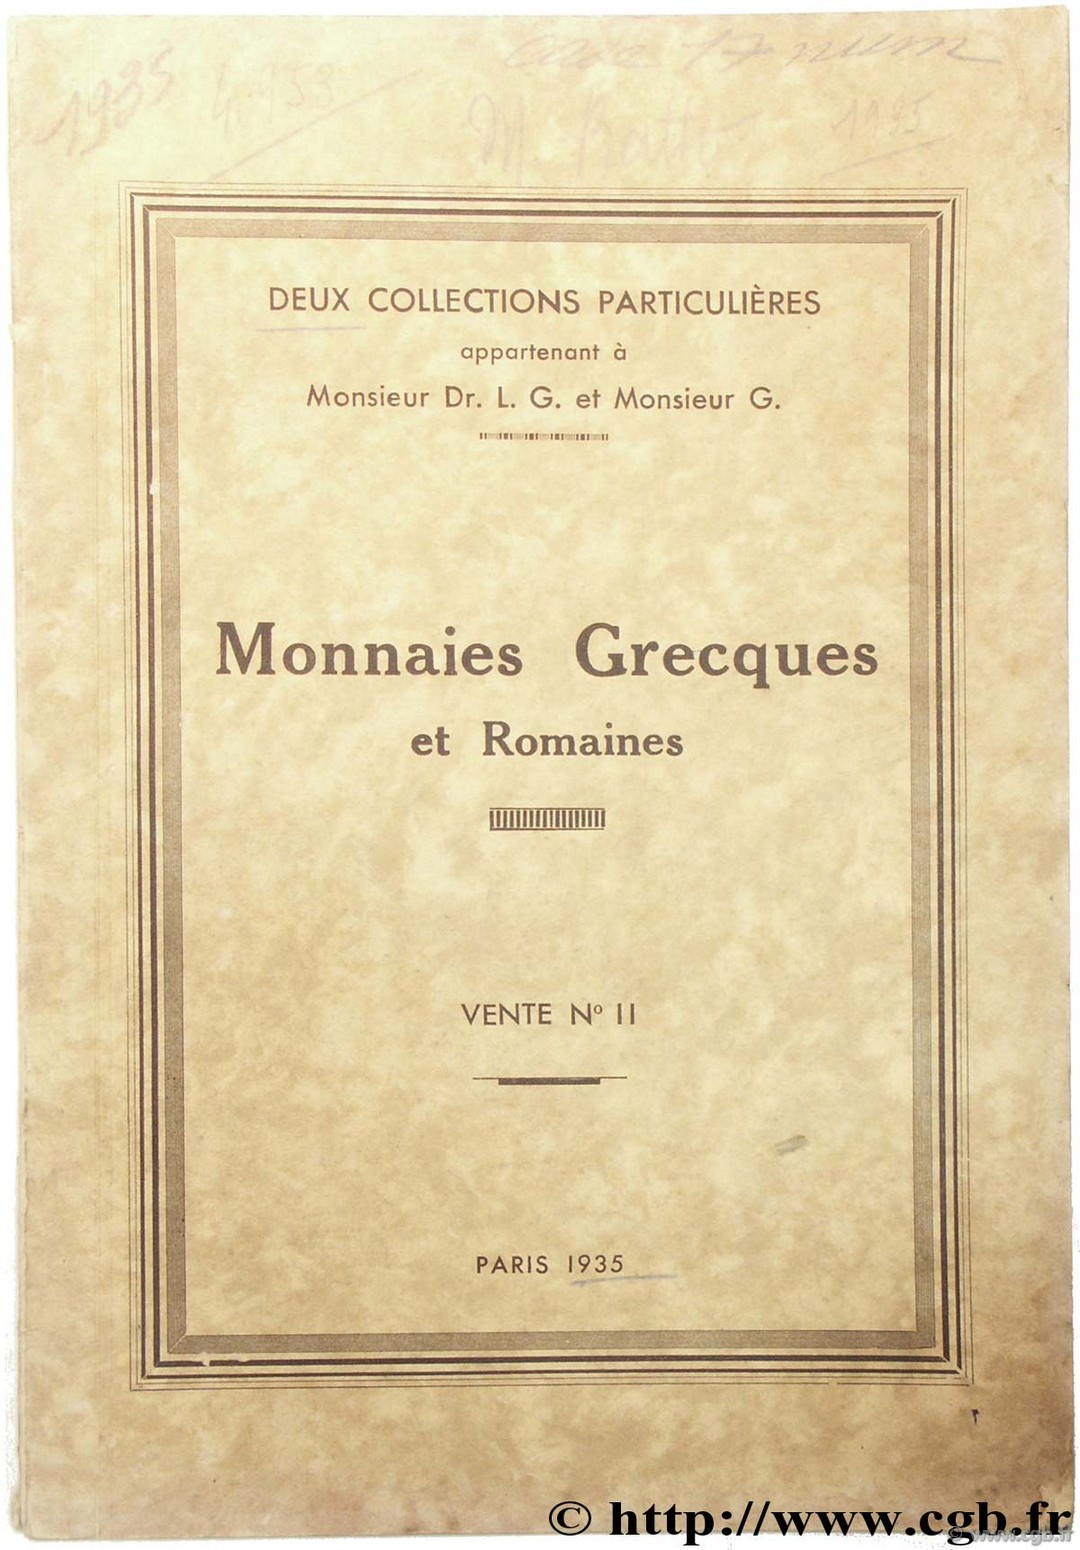 Collections L.-G. et G., monnaies grecques et romaines RATTO M.